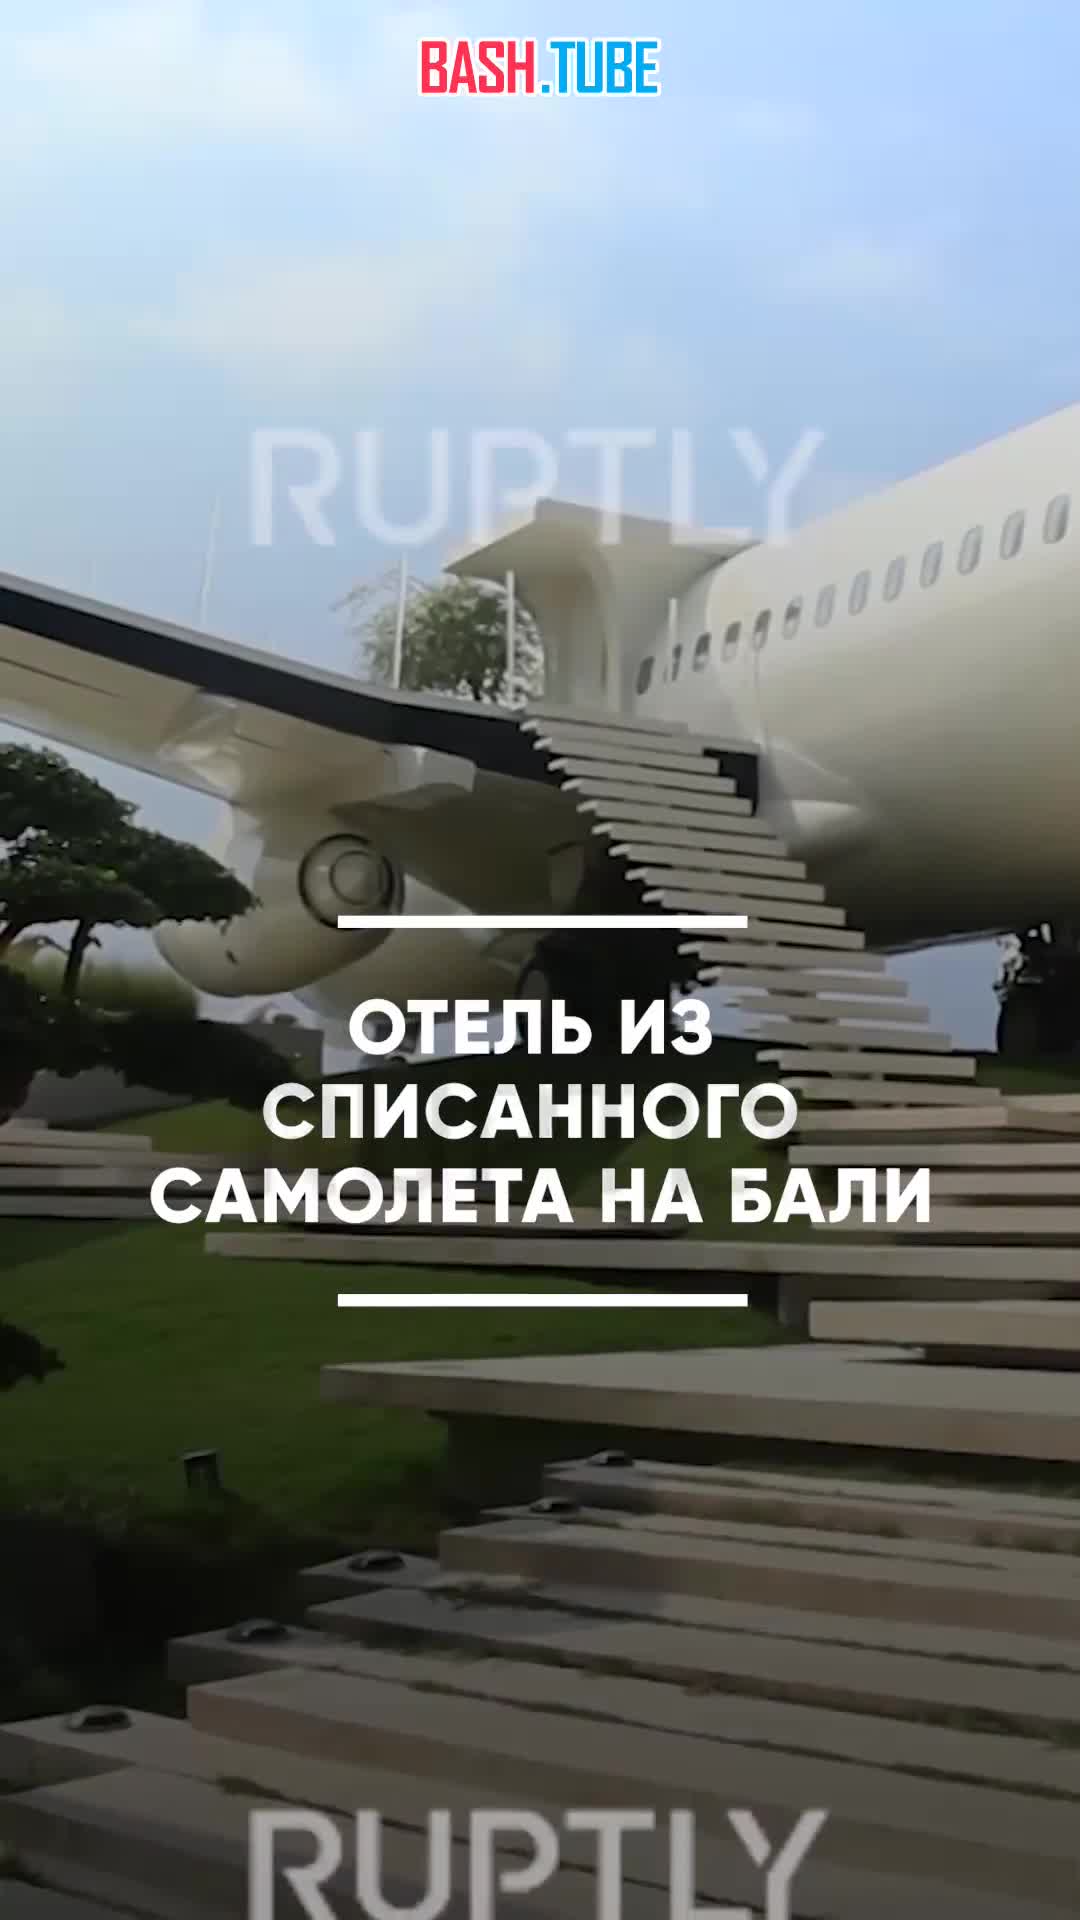  Российский предприниматель превратил списанный самолет в роскошную виллу на вершине скалы